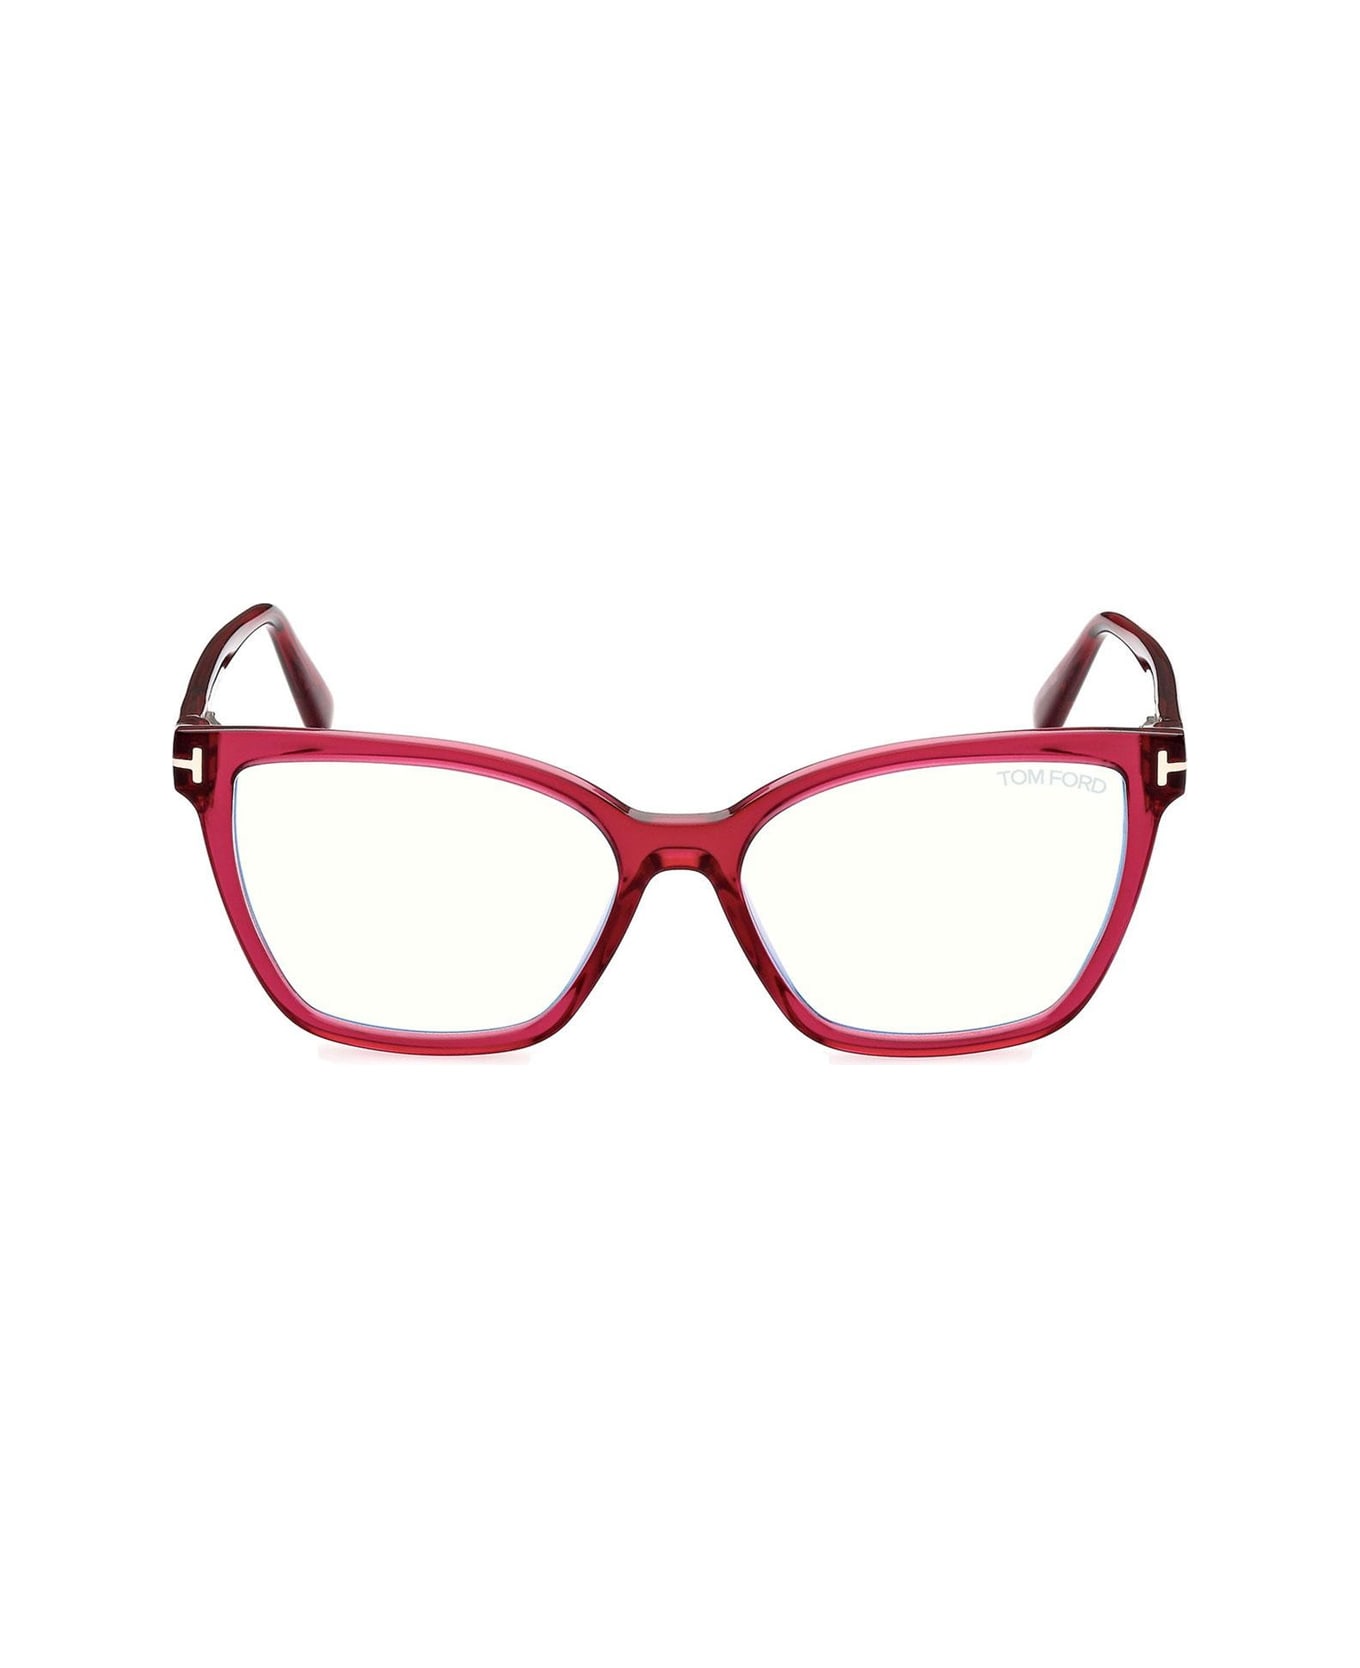 Tom Ford Eyewear Ft5812 074 Glasses - Rosa